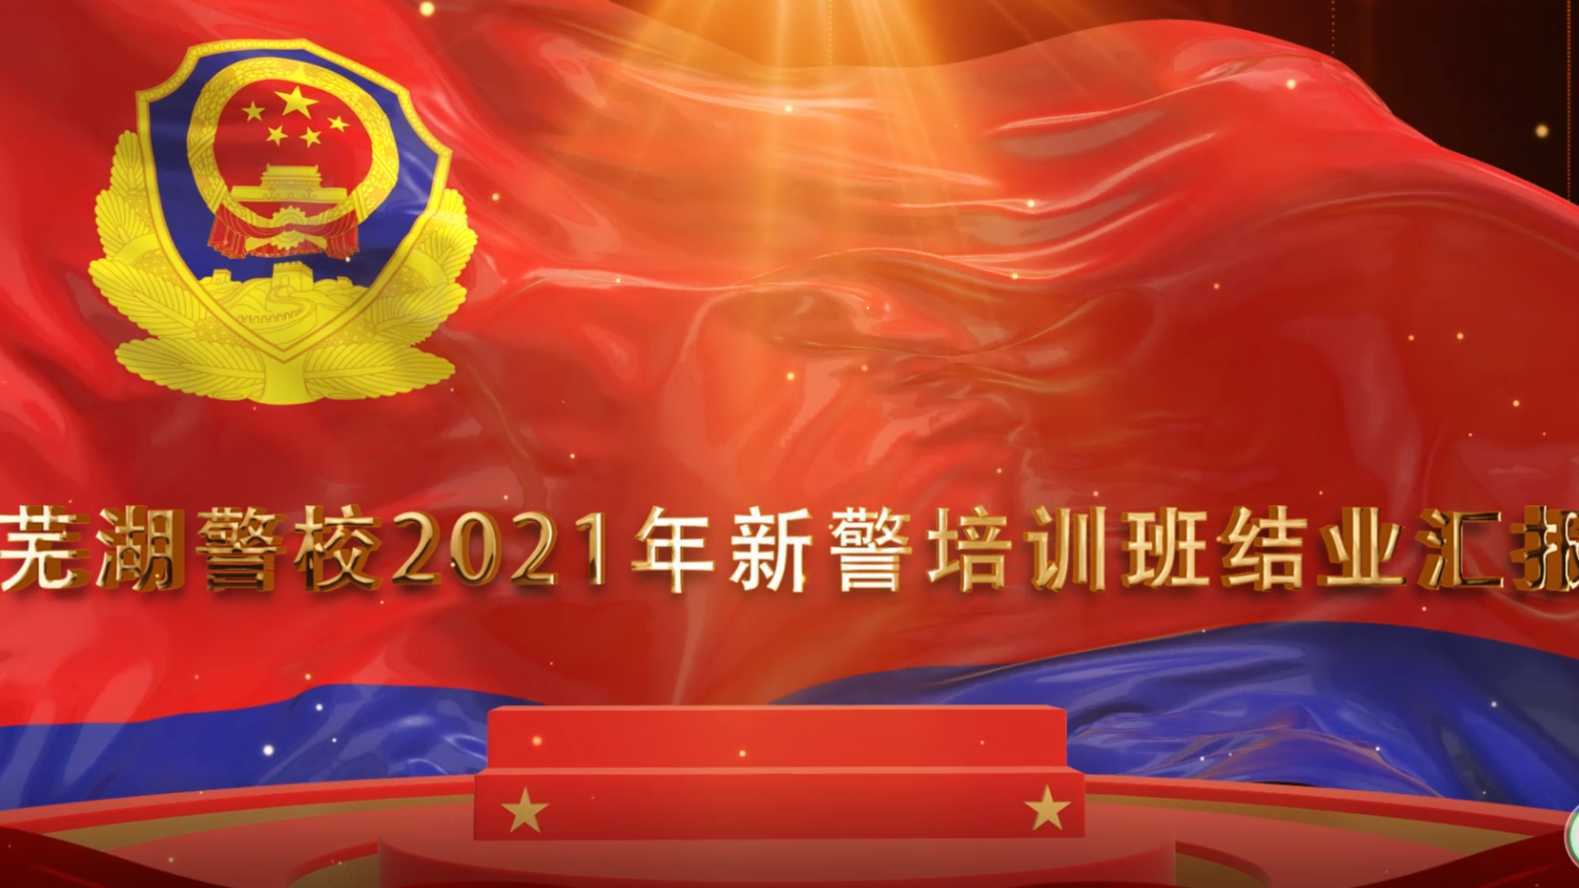 芜湖警校2021新警培训班结业汇报